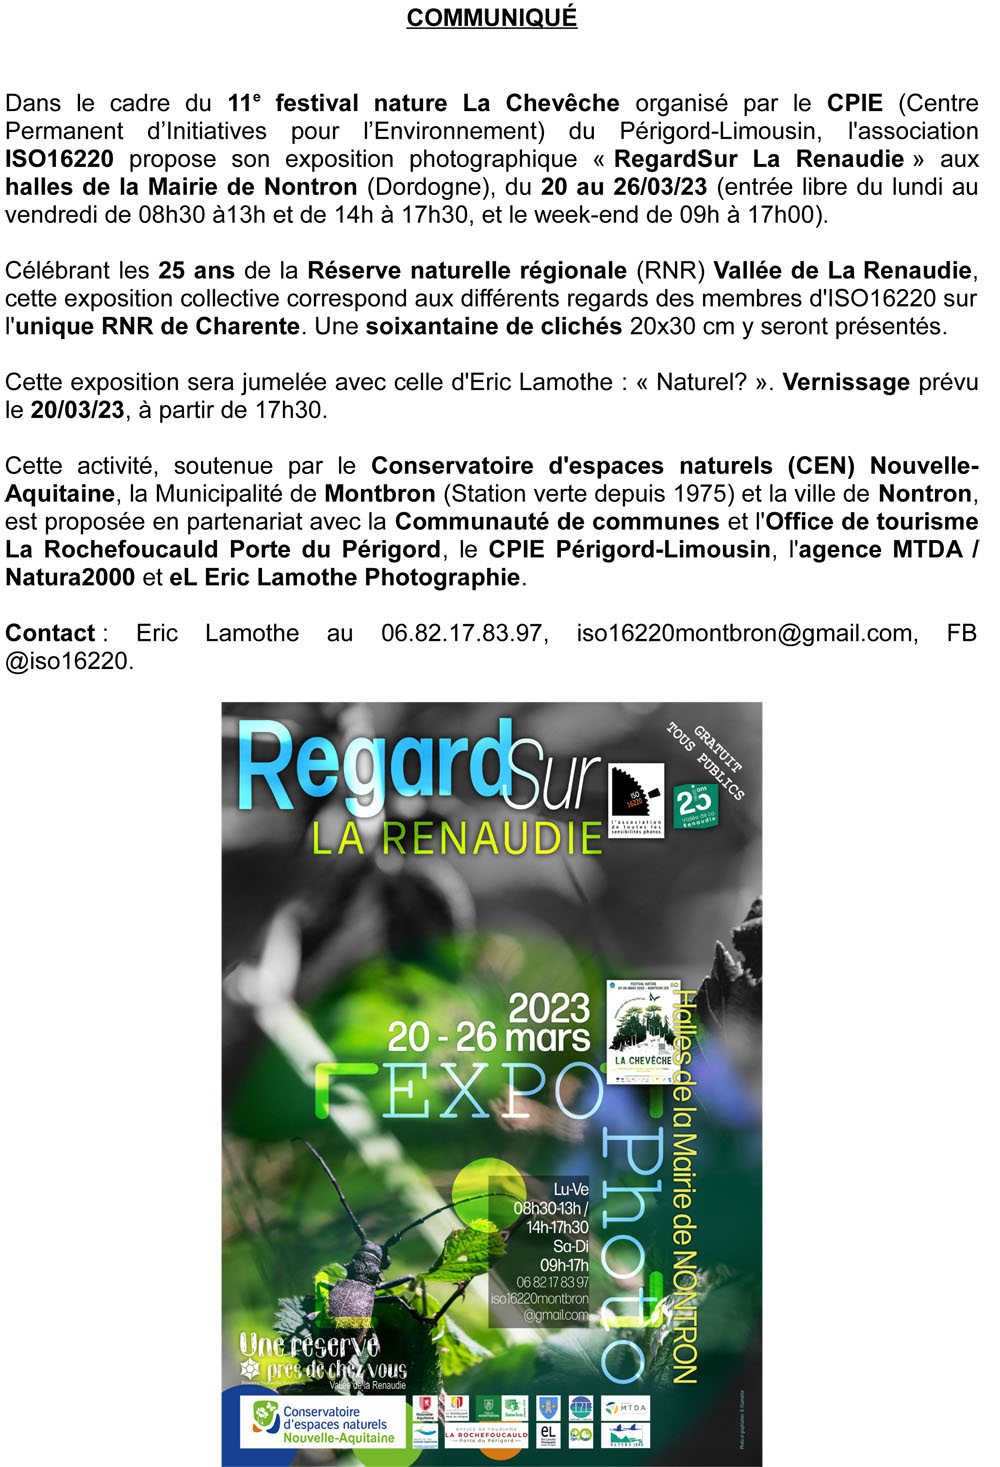 ISO16220 Expo RegardSur La Renaudie 2203 Communique